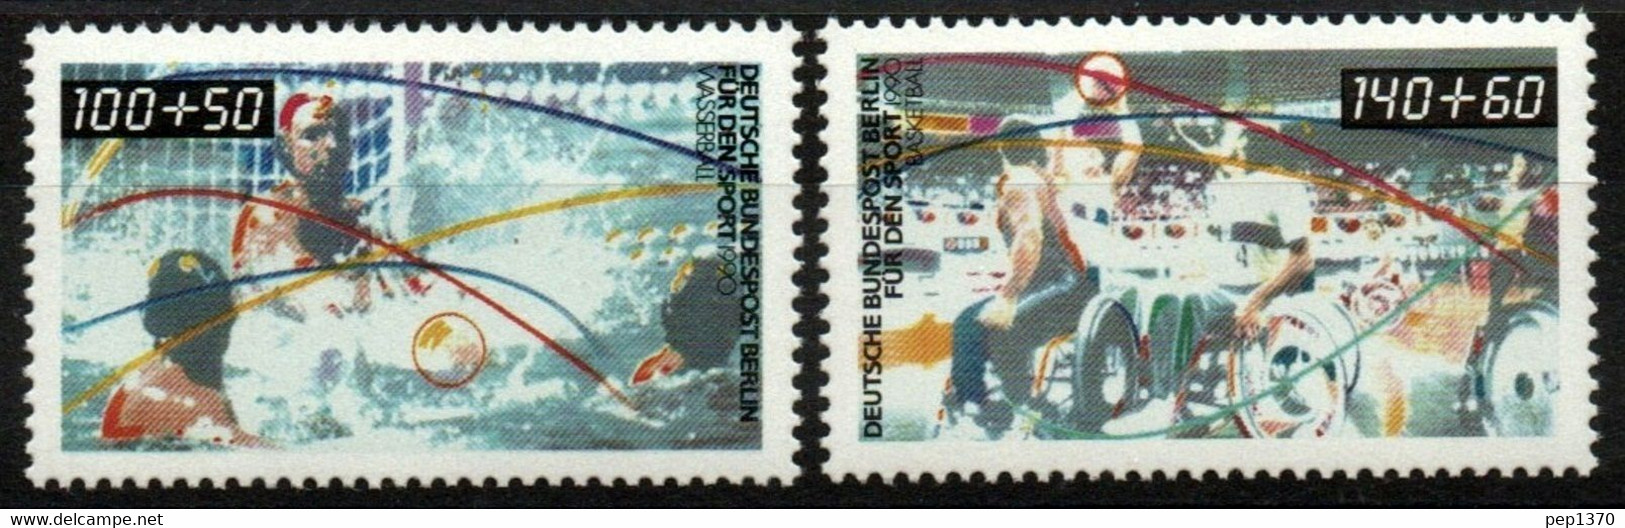 ALEMANIA BERLIN 1990 - DEPORTES - WATERPOLO Y BALONCESTO PARALIMPICO - YVERT Nº 825/825** - Water Polo